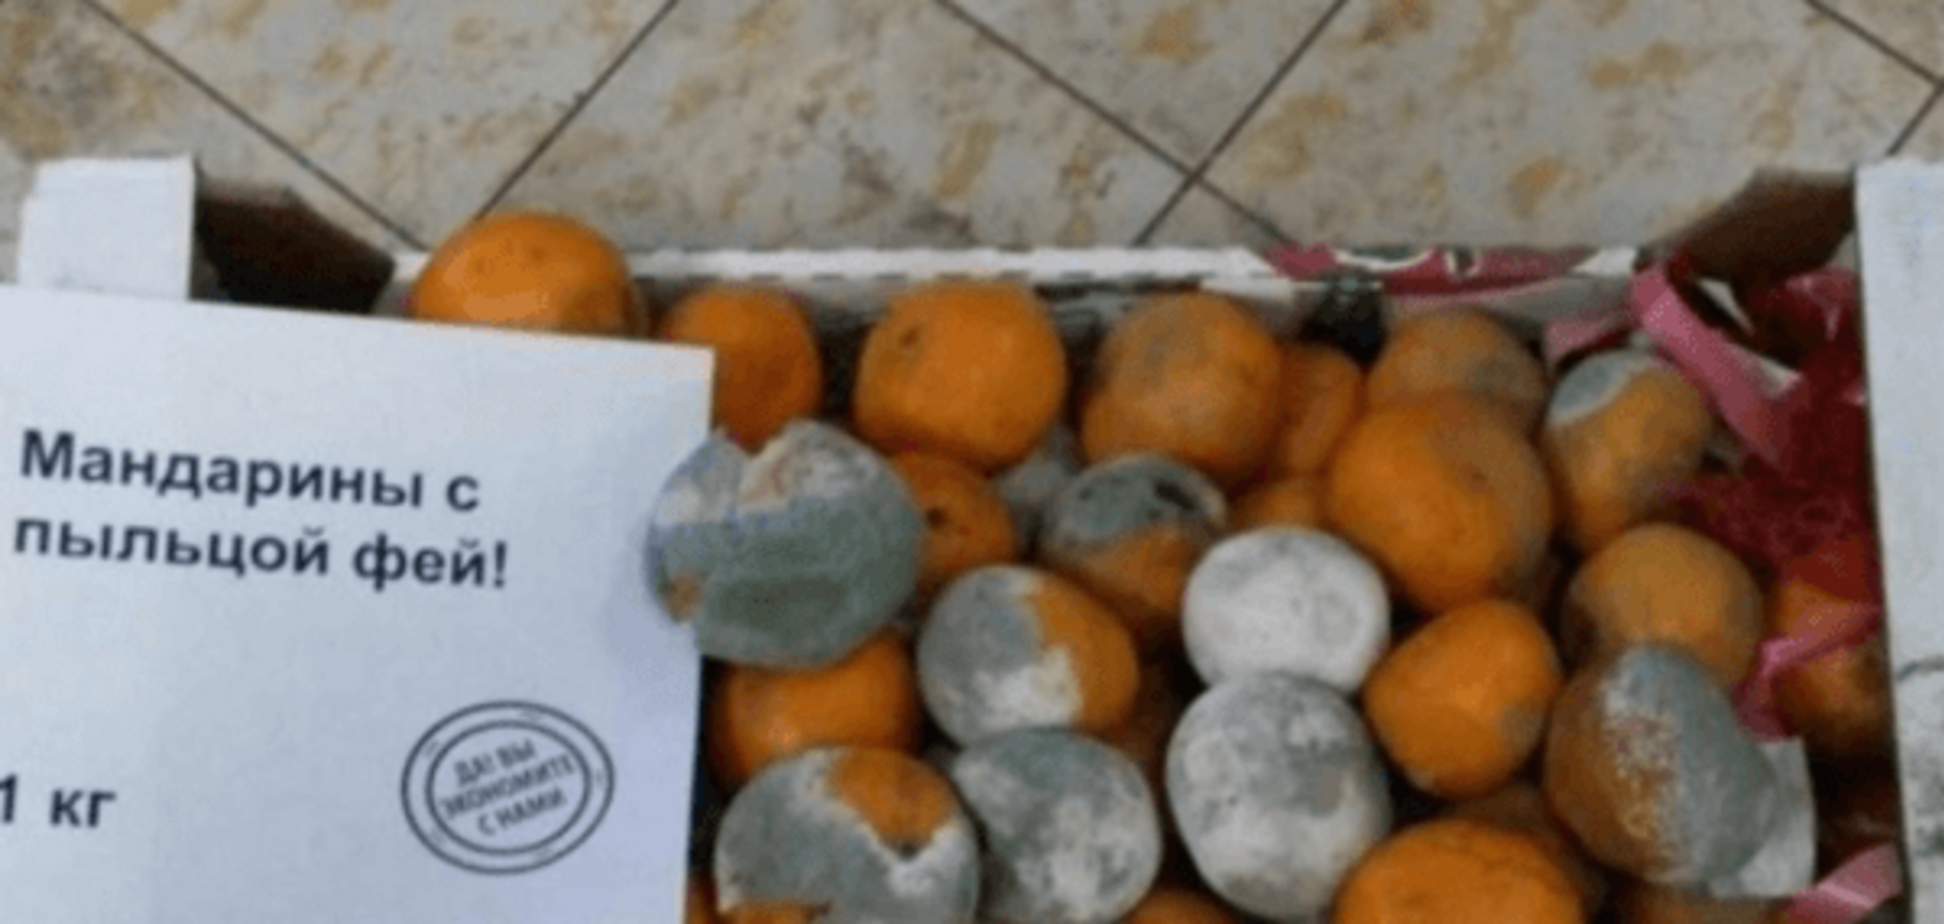 'Пыльца фей'! Реклама гнилых мандаринов в России 'убила' сеть: фотофакт